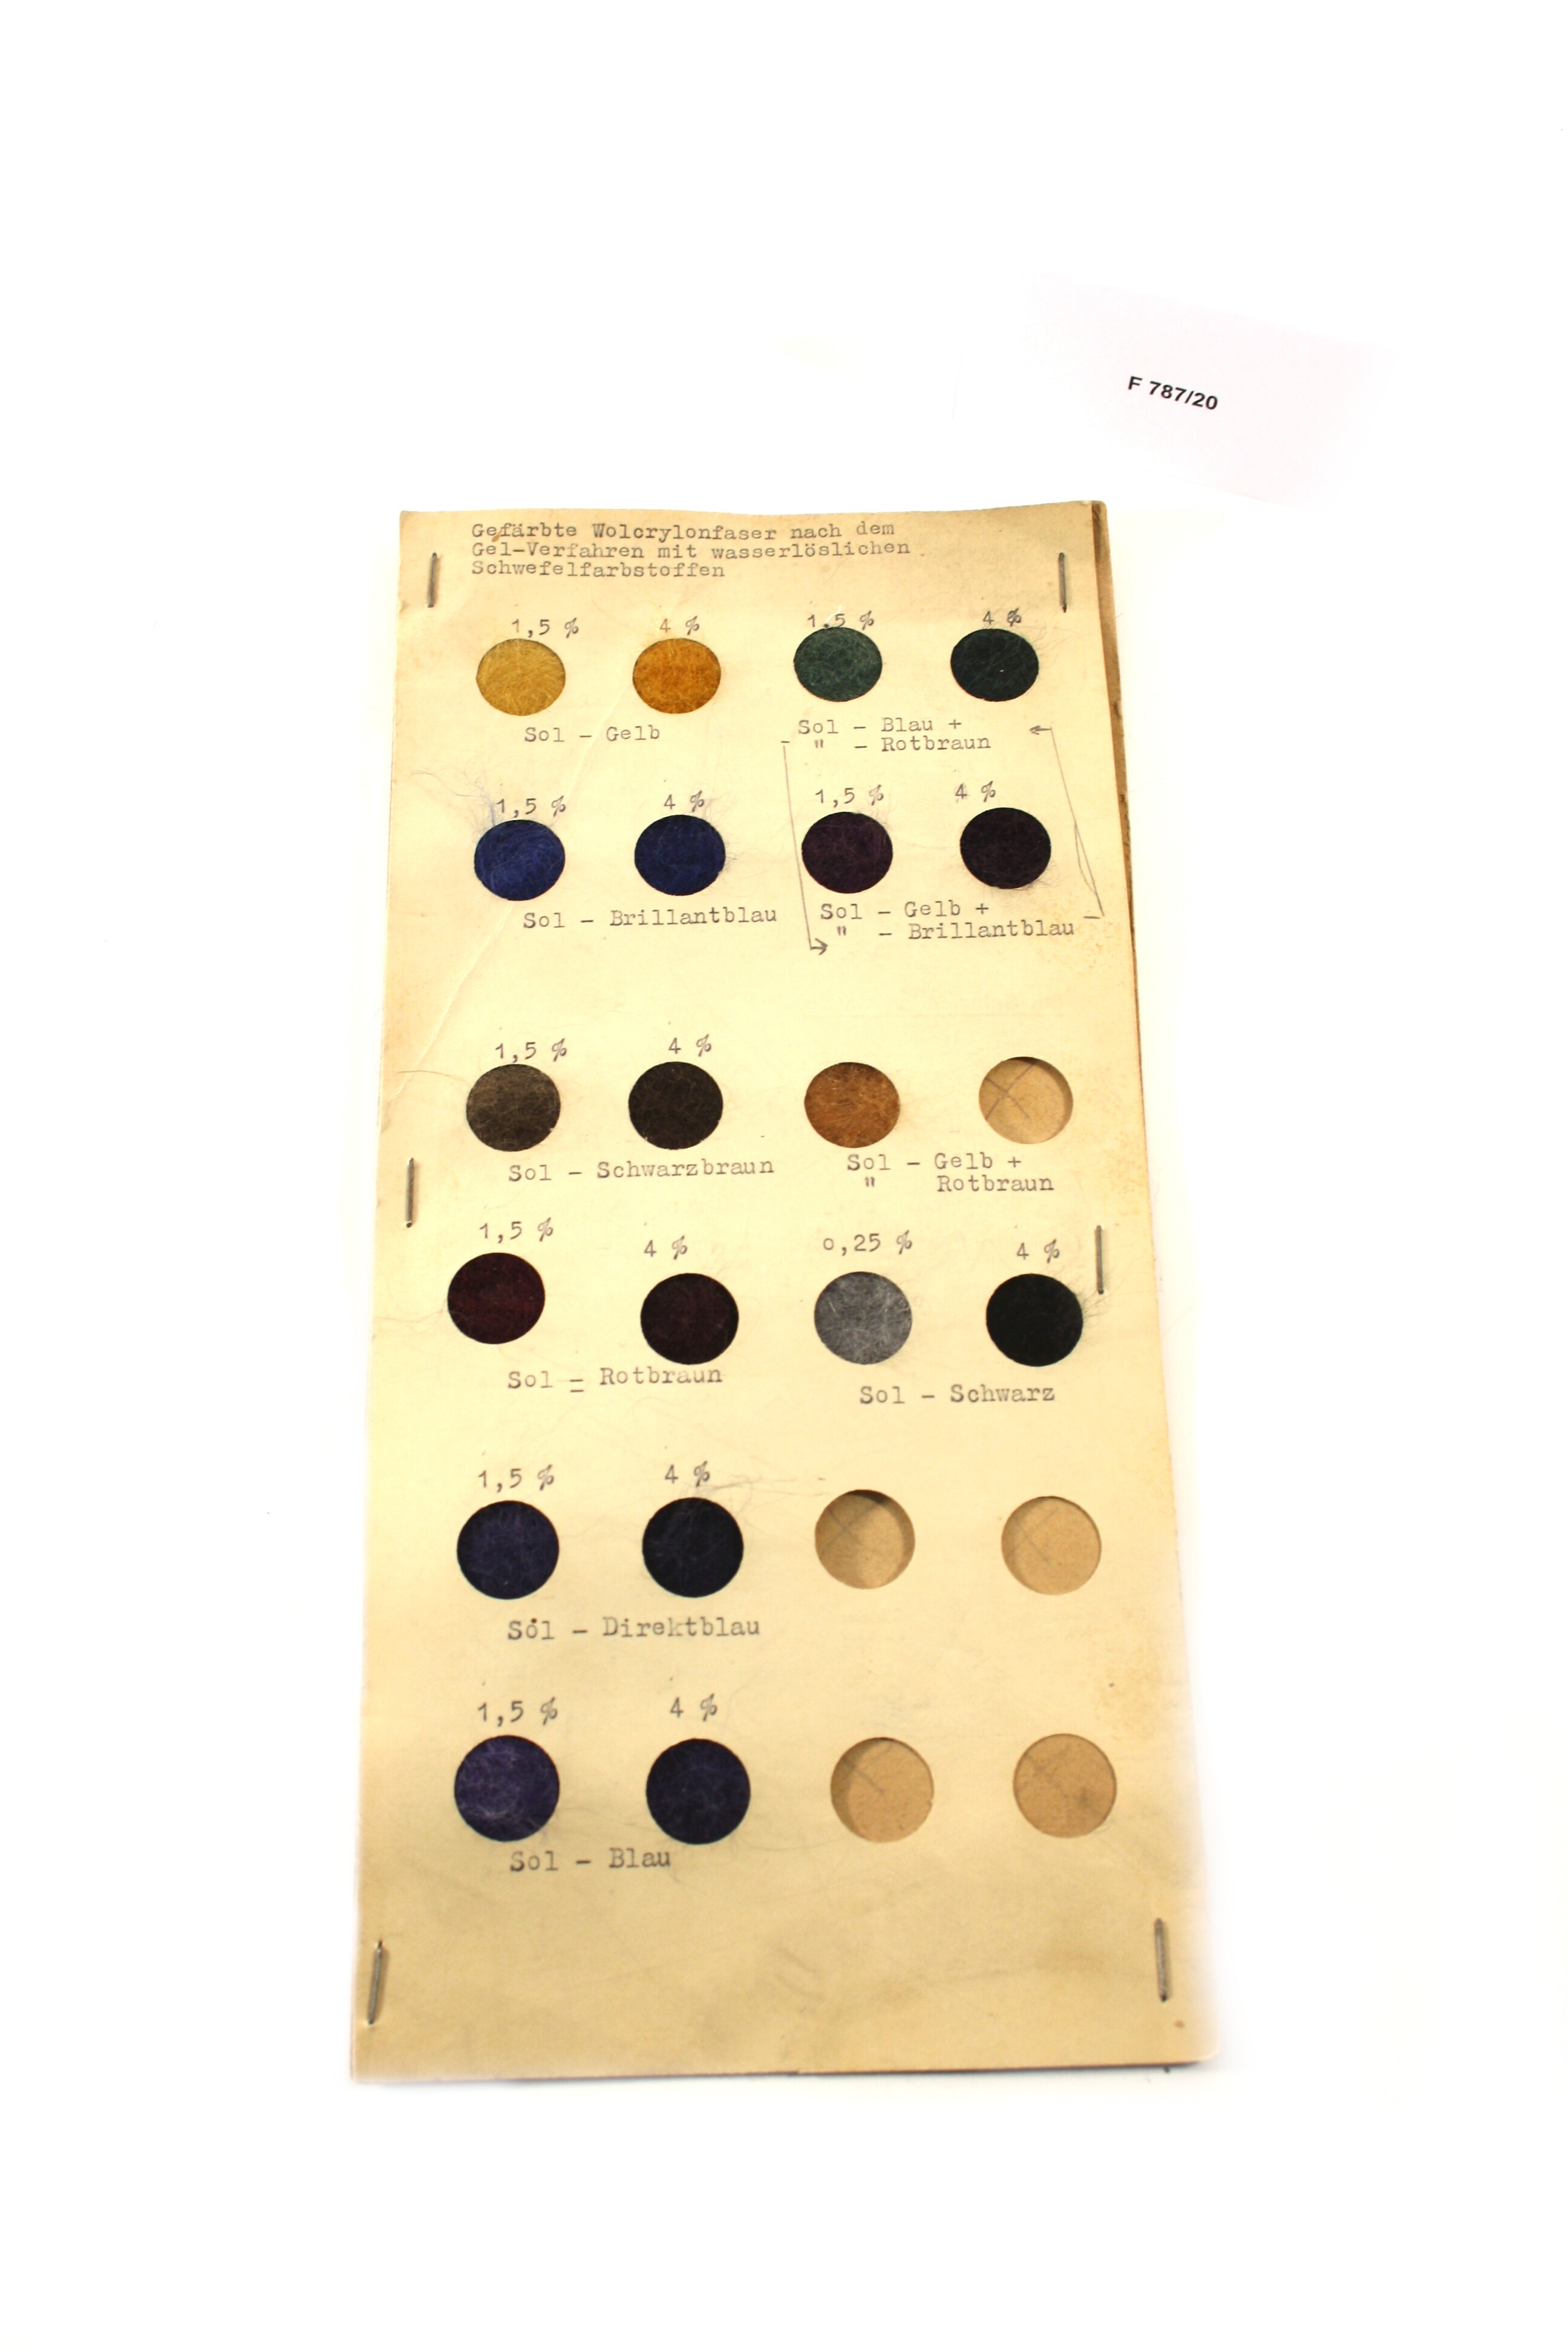 Musterkarte gefärbte Wolcrylonfaser (Industrie- und Filmmuseum Wolfen CC BY-NC-SA)